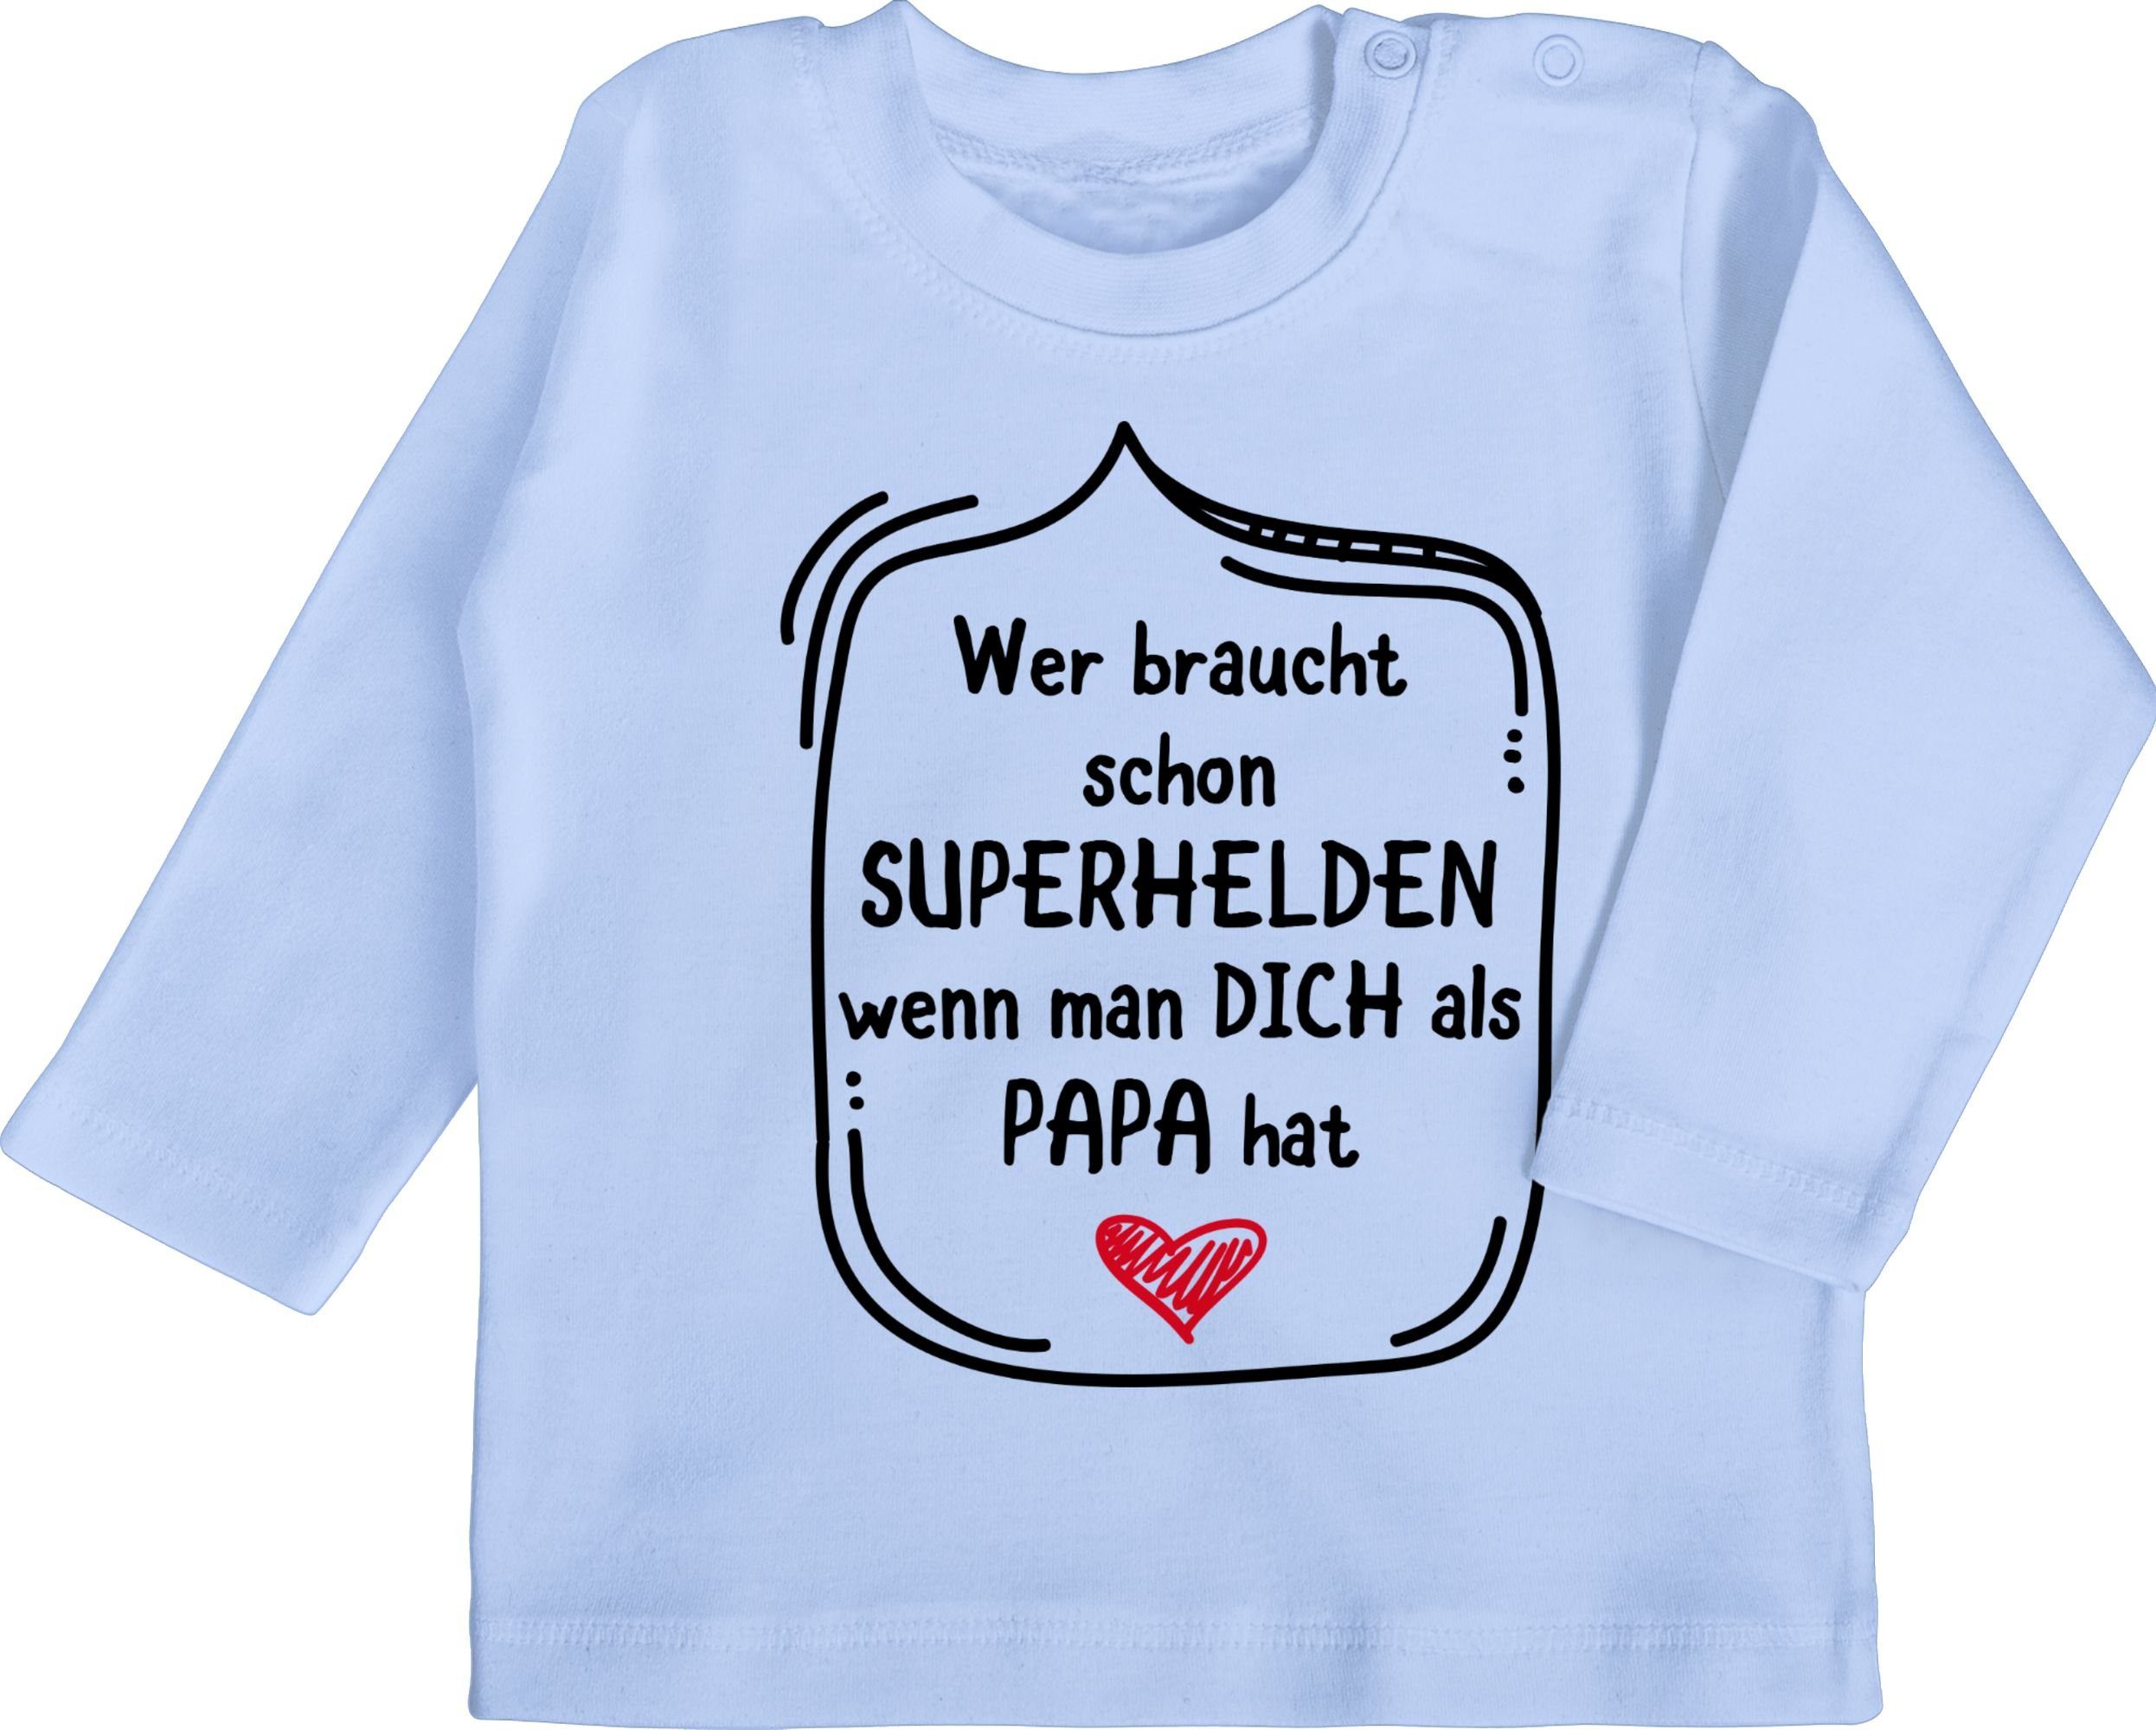 Shirtracer T-Shirt Vatertag schon Baby dich als hat Papa Geschenk Superhelden Wer 2 braucht wenn Babyblau man